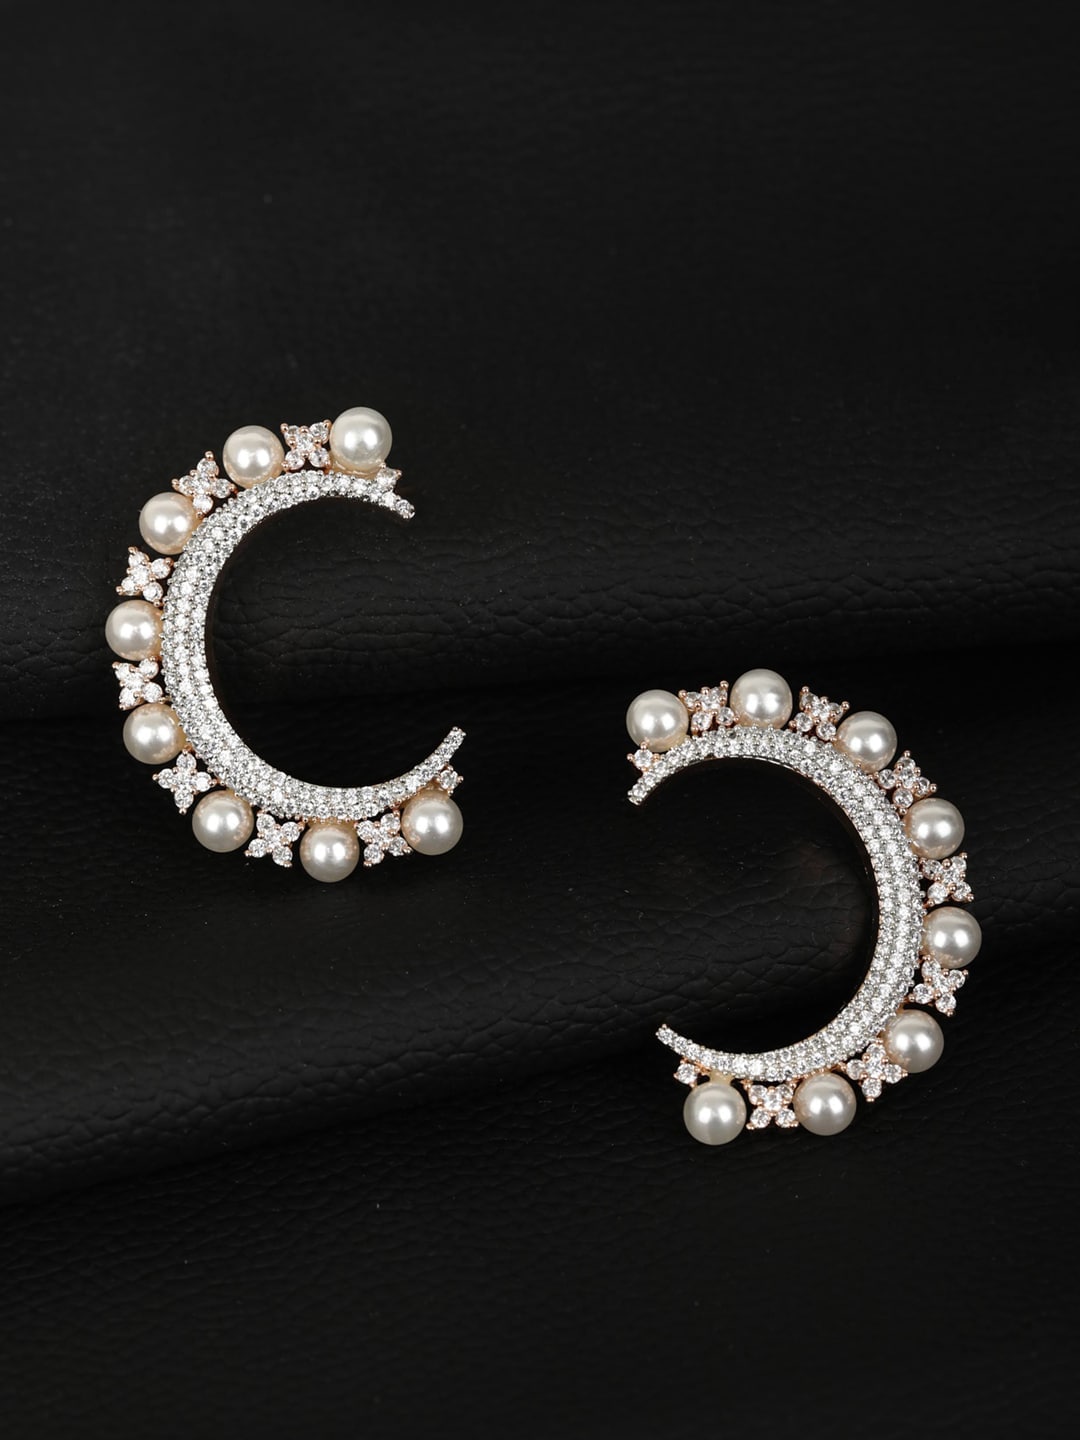 Priyaasi Rose Gold Contemporary Half Hoop Earrings Price in India